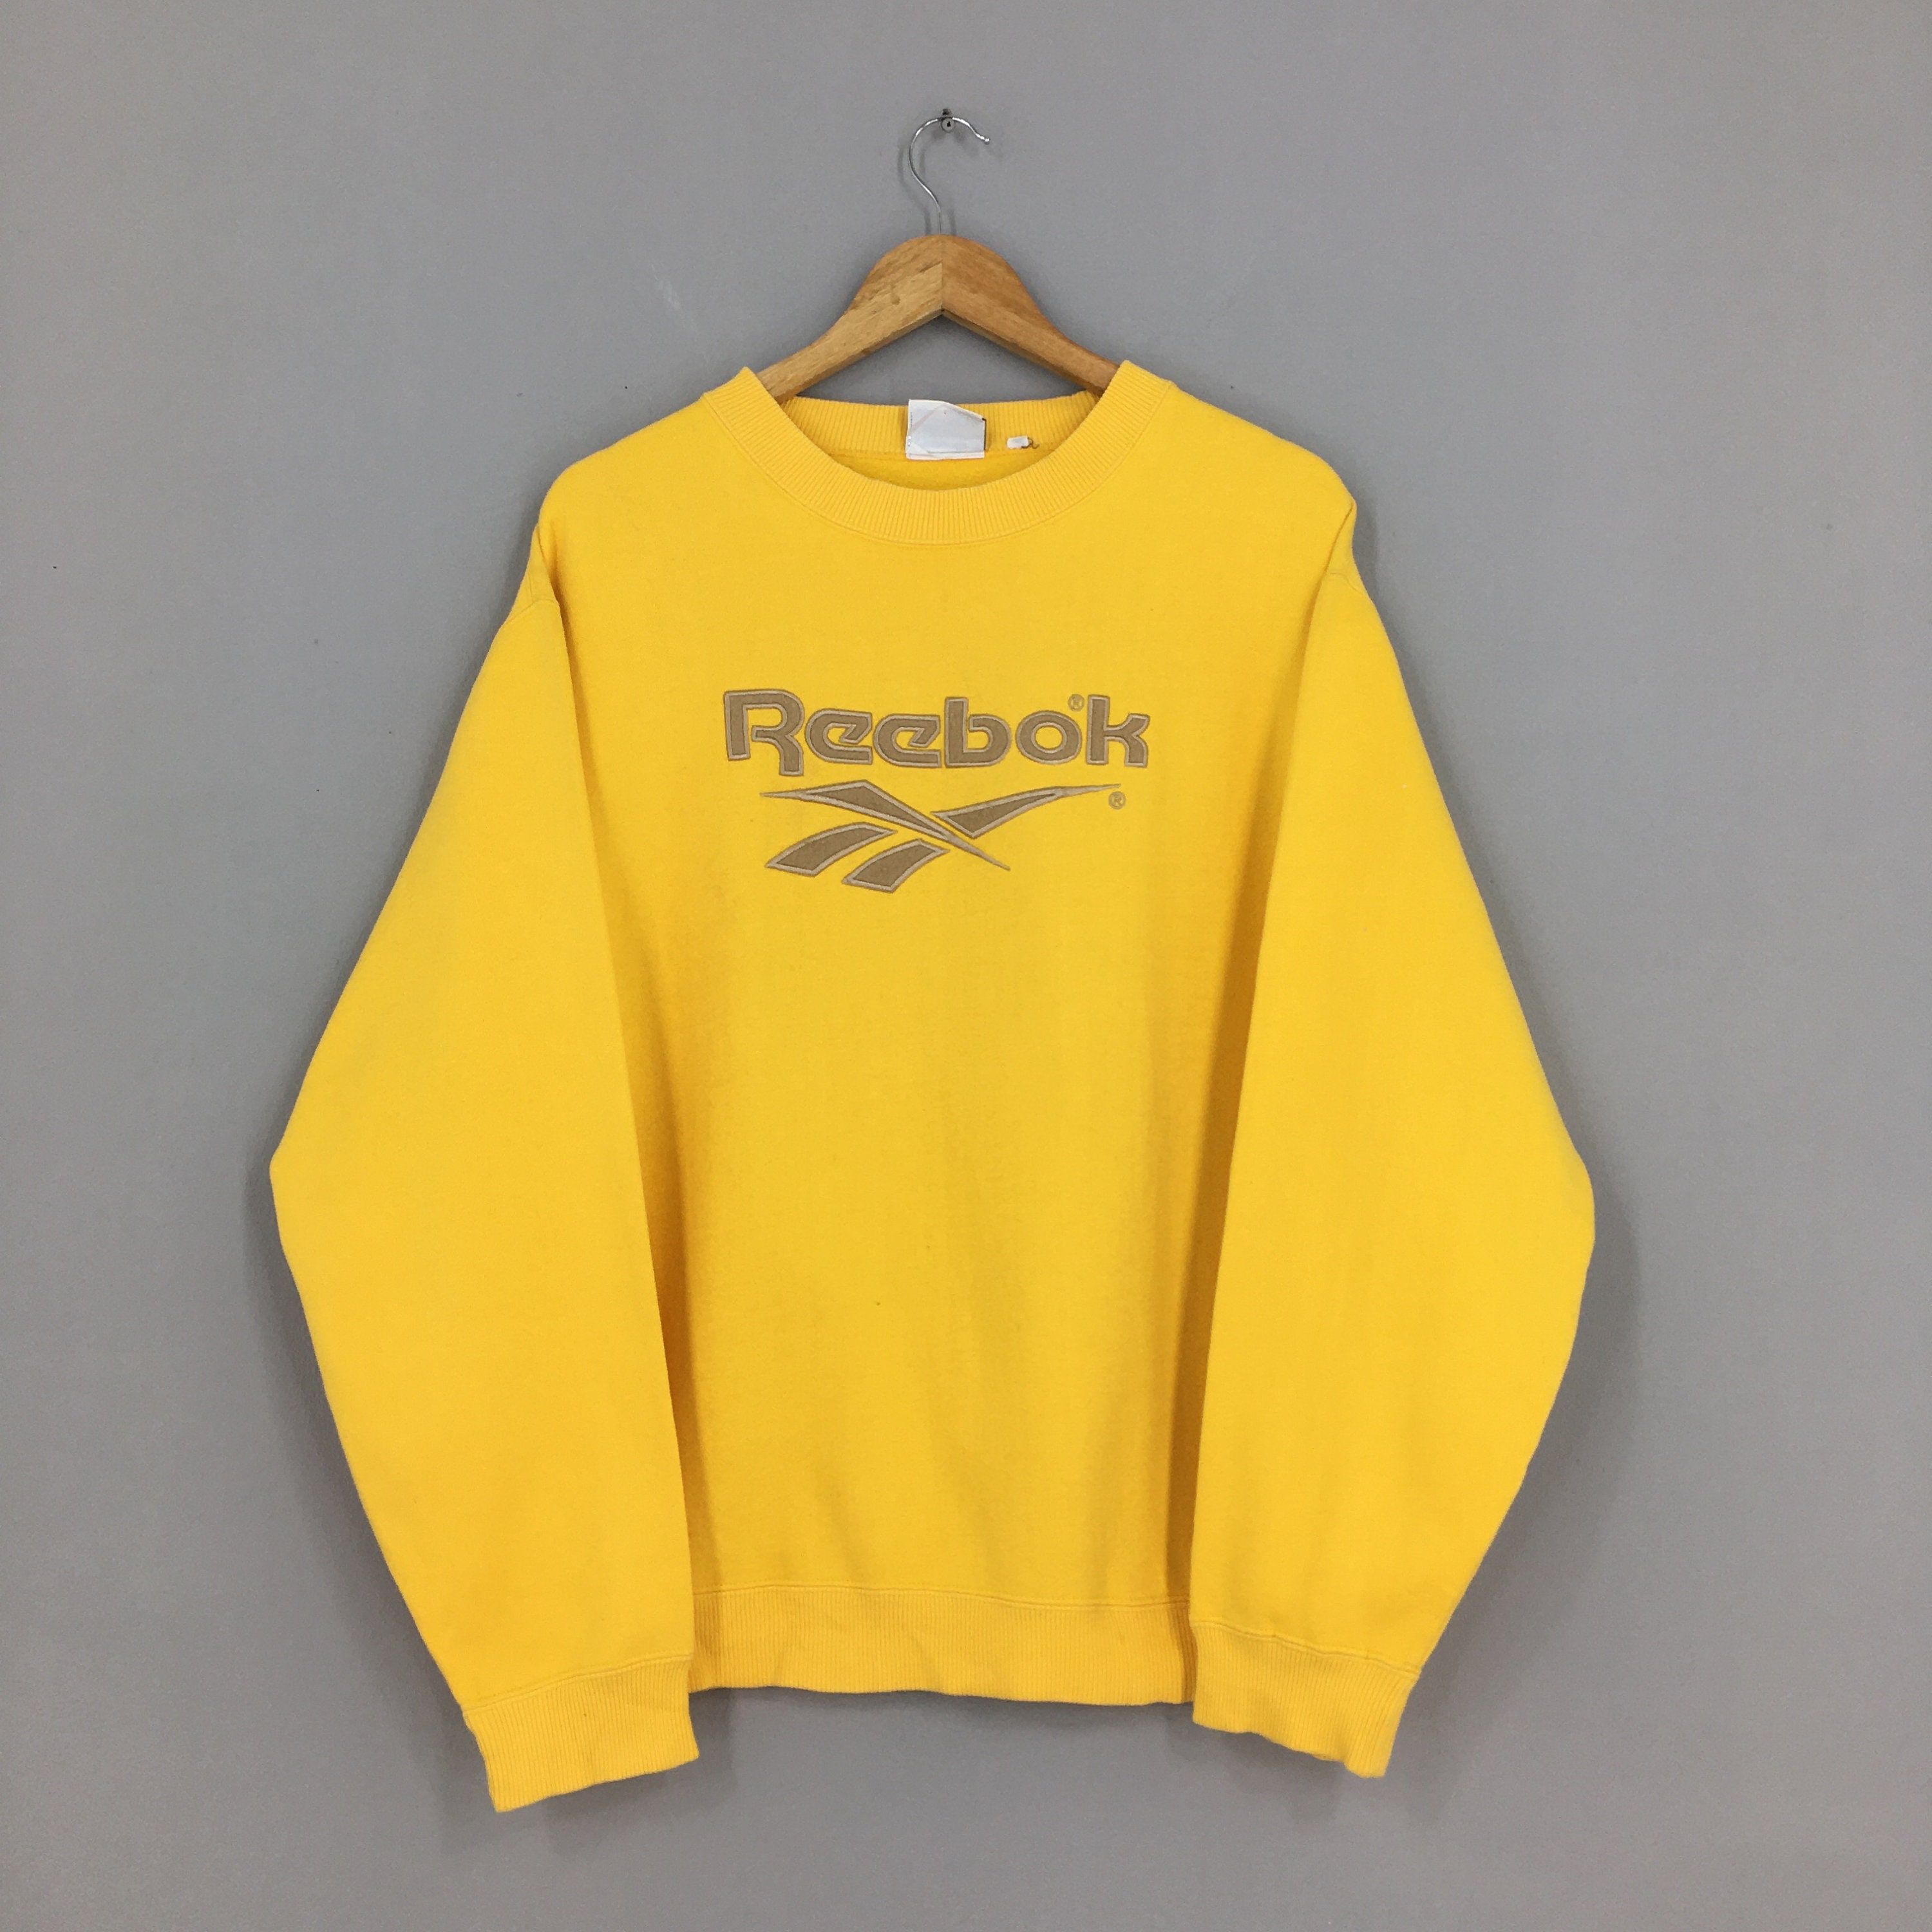 Vintage Reebok England Sweatshirt Large 90's Etsy